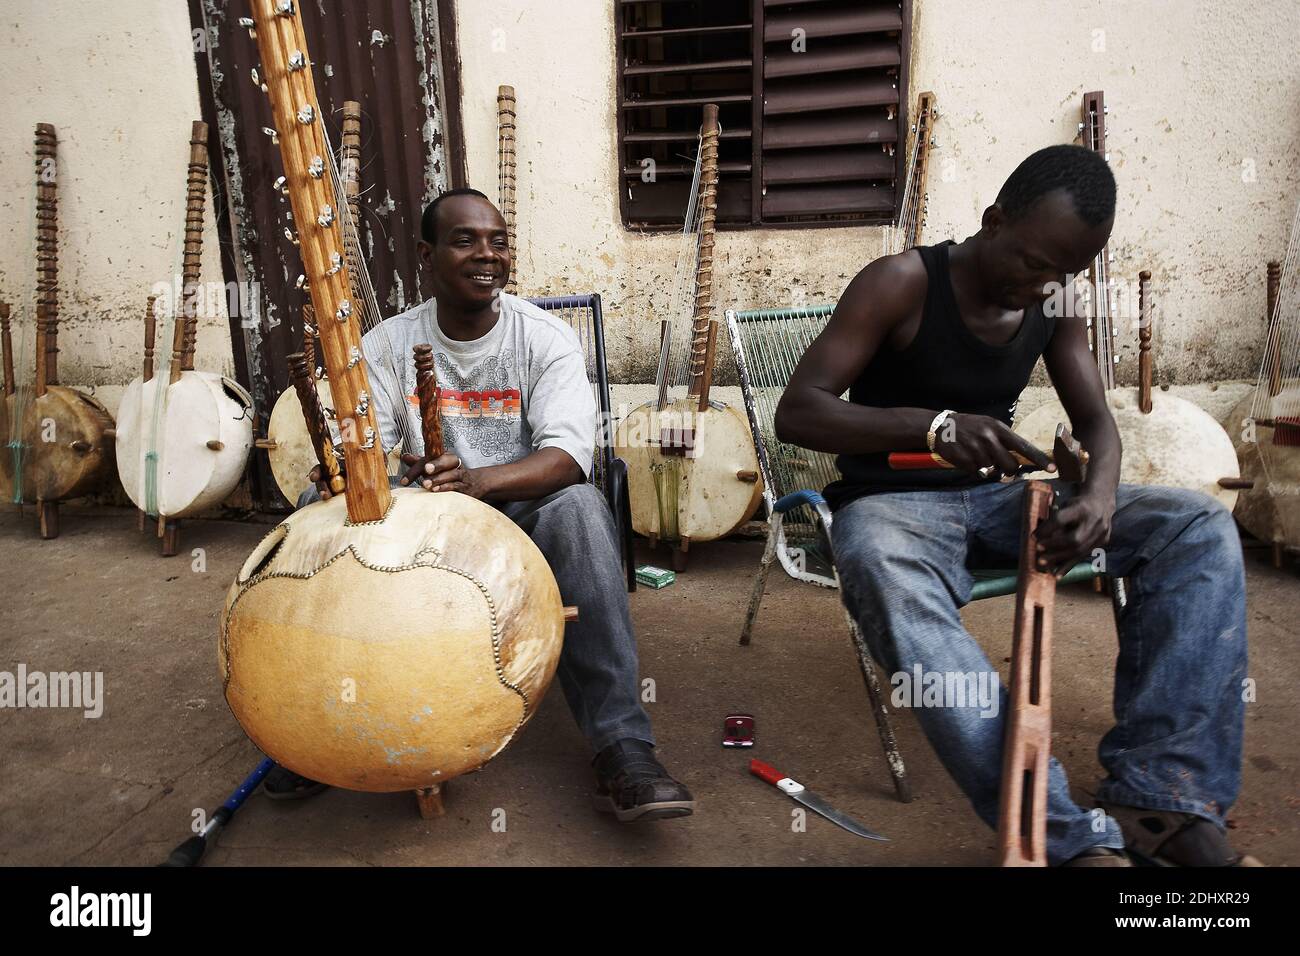 Toumani Diabaté è un giocatore maliano di kora che ha guadagnato l'acclamazione internazionale per la sua musica. Bamako, Mali, Africa Occidentale. Foto Stock